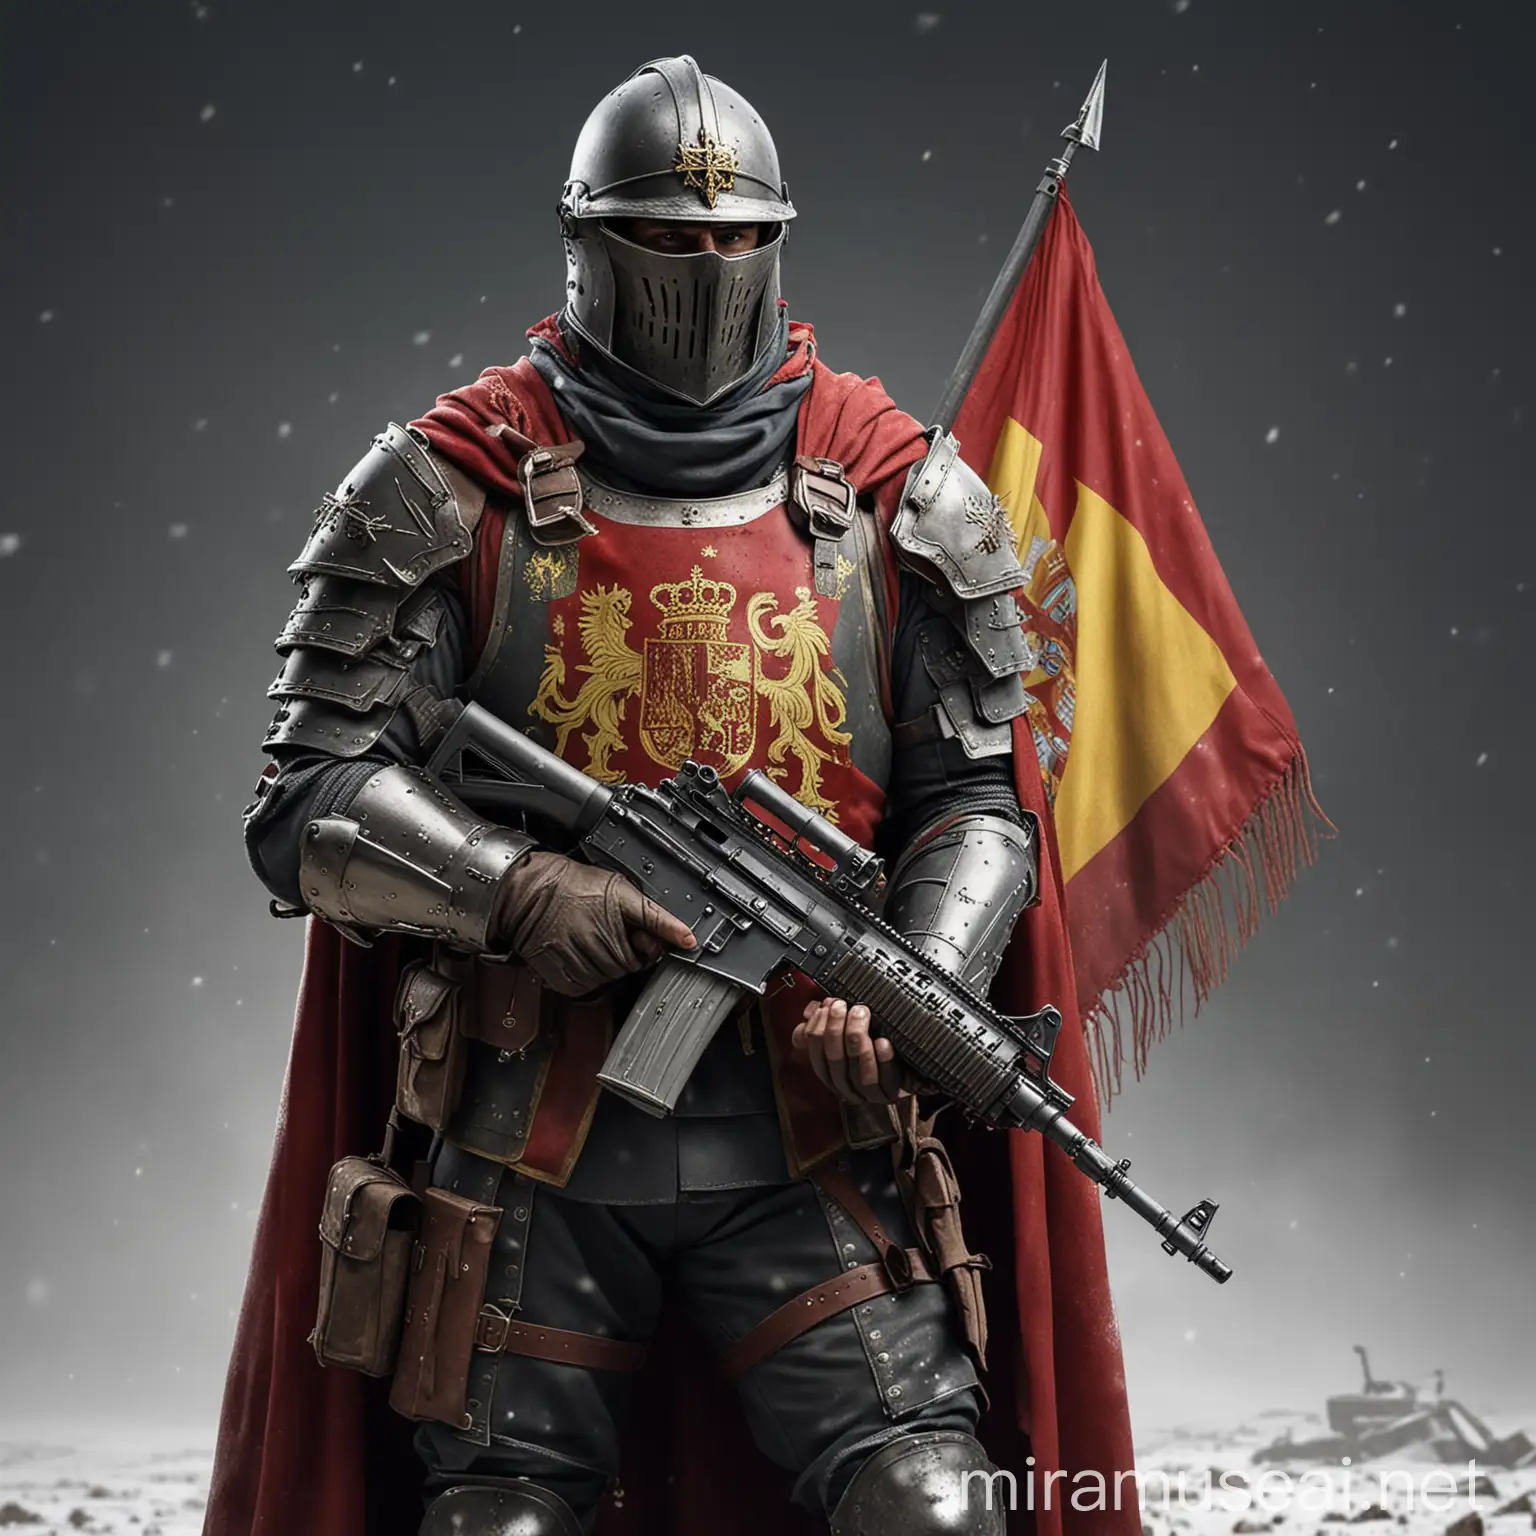 Modern Spanish Holy Knight Warrior with Machine Gun in Snowy Battlefield